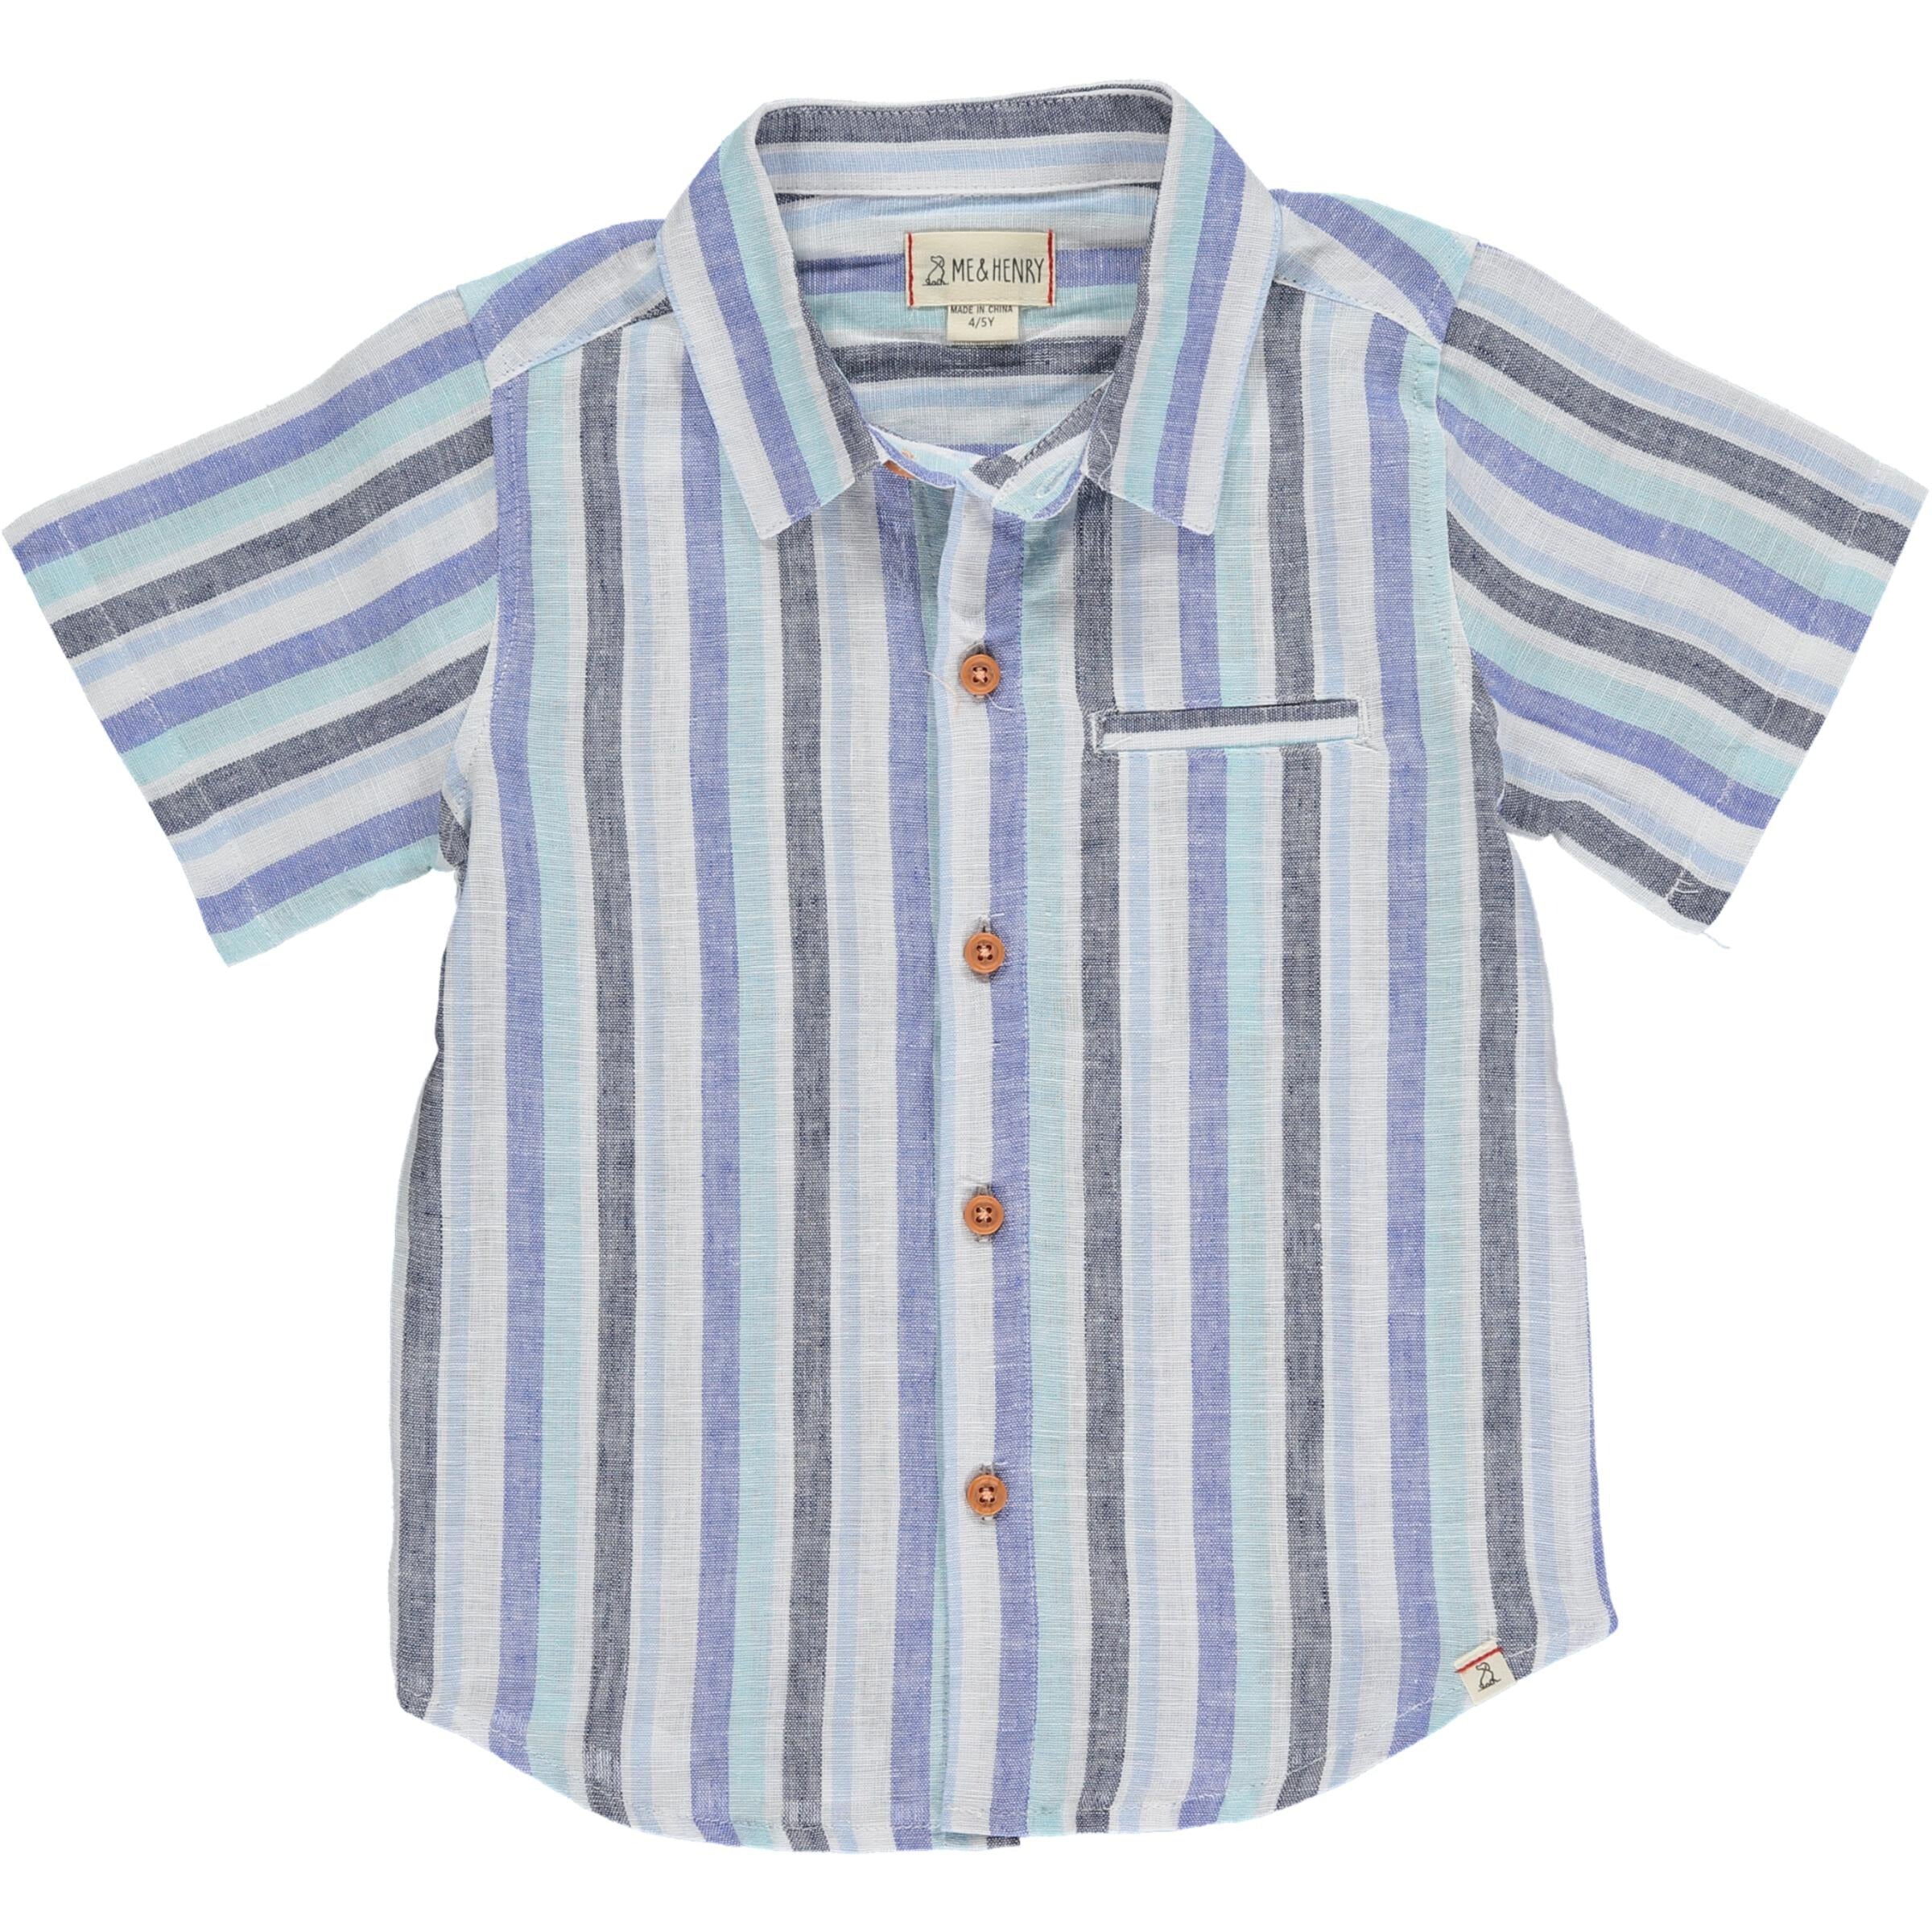 Newport Shirt - Blue Wide Stripe